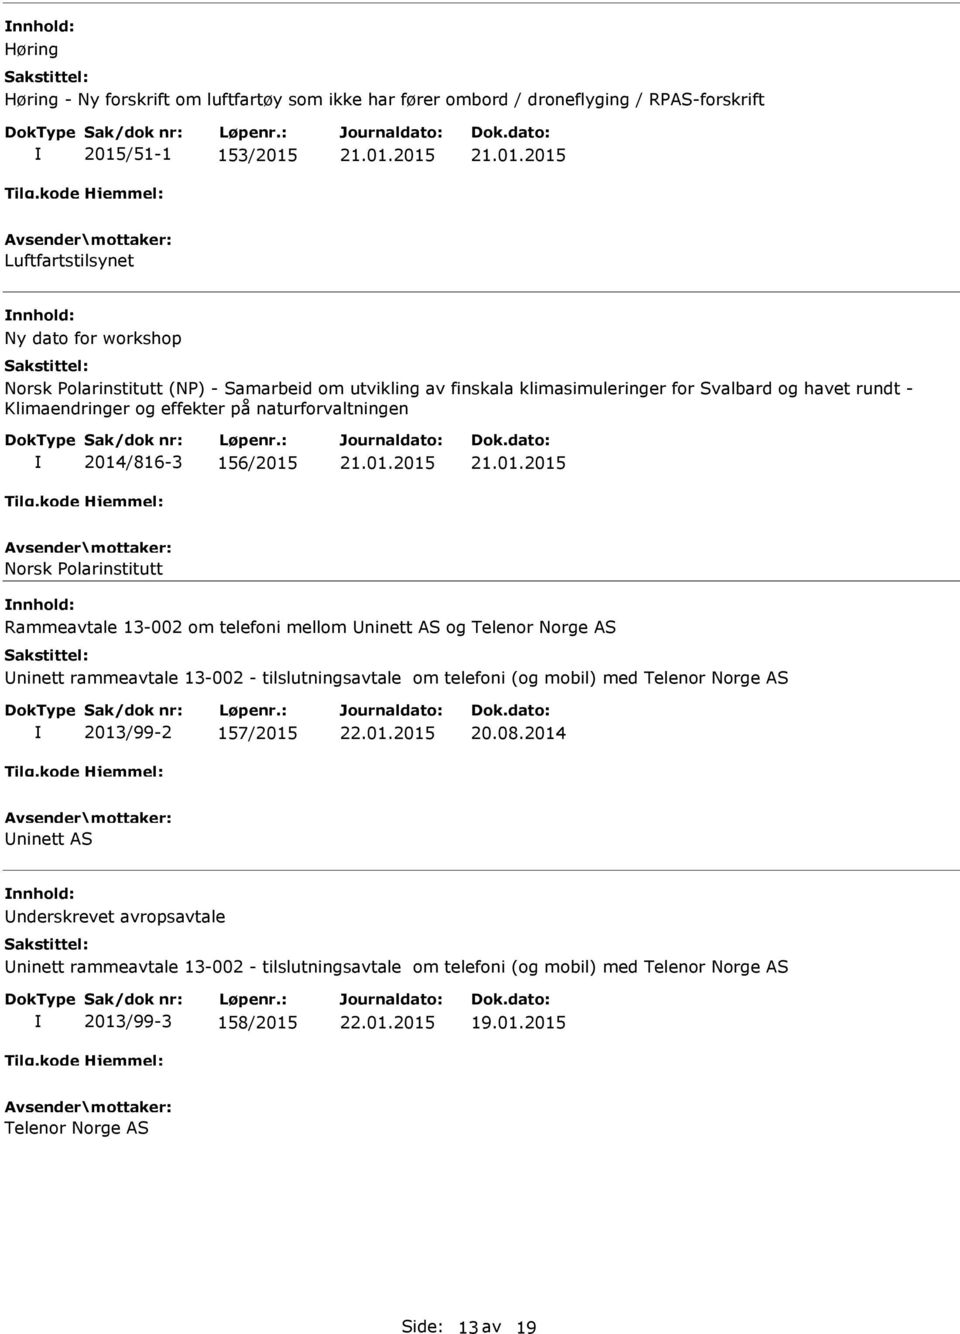 Rammeavtale 13-002 om telefoni mellom ninett AS og Telenor Norge AS ninett rammeavtale 13-002 - tilslutningsavtale om telefoni (og mobil) med Telenor Norge AS 2013/99-2 157/2015 20.